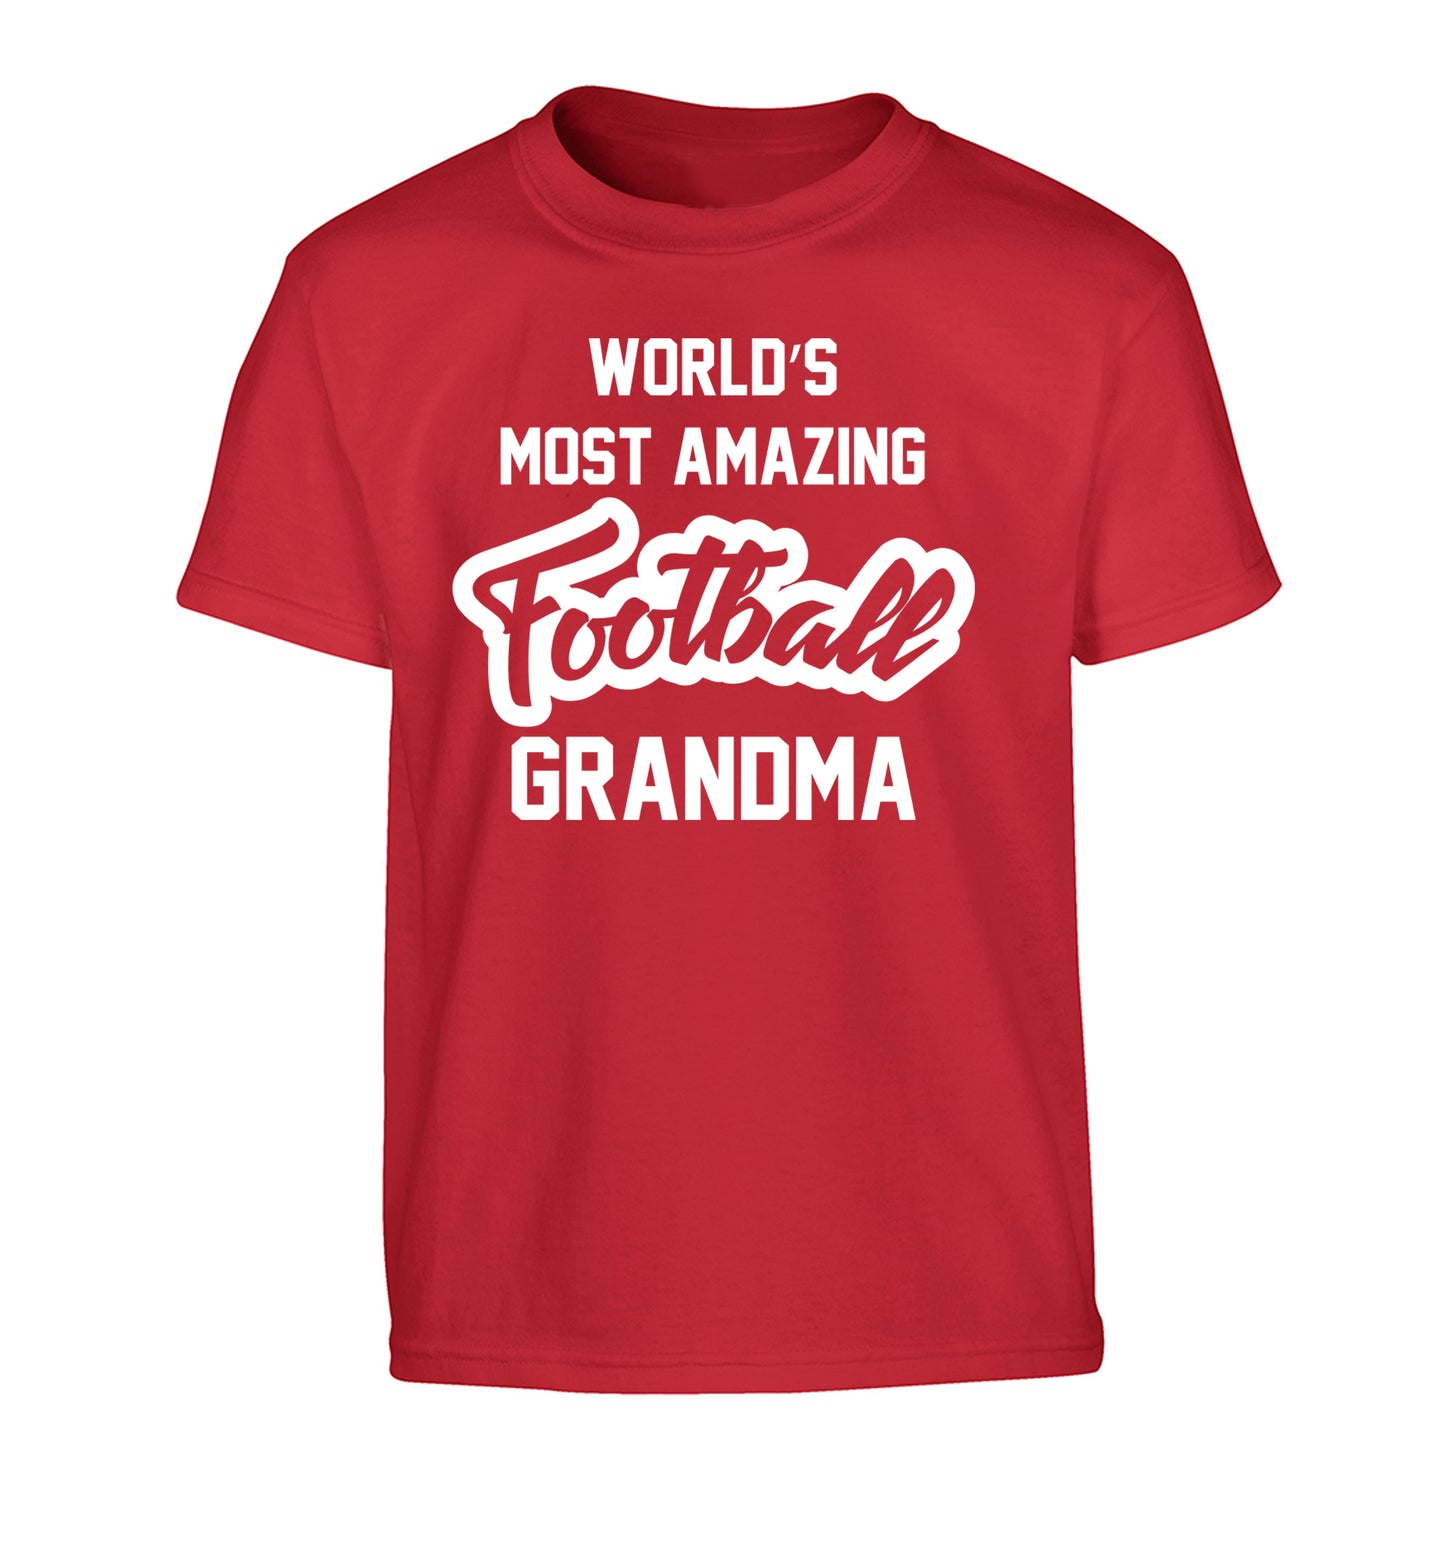 Worlds most amazing football grandma Children's red Tshirt 12-14 Years